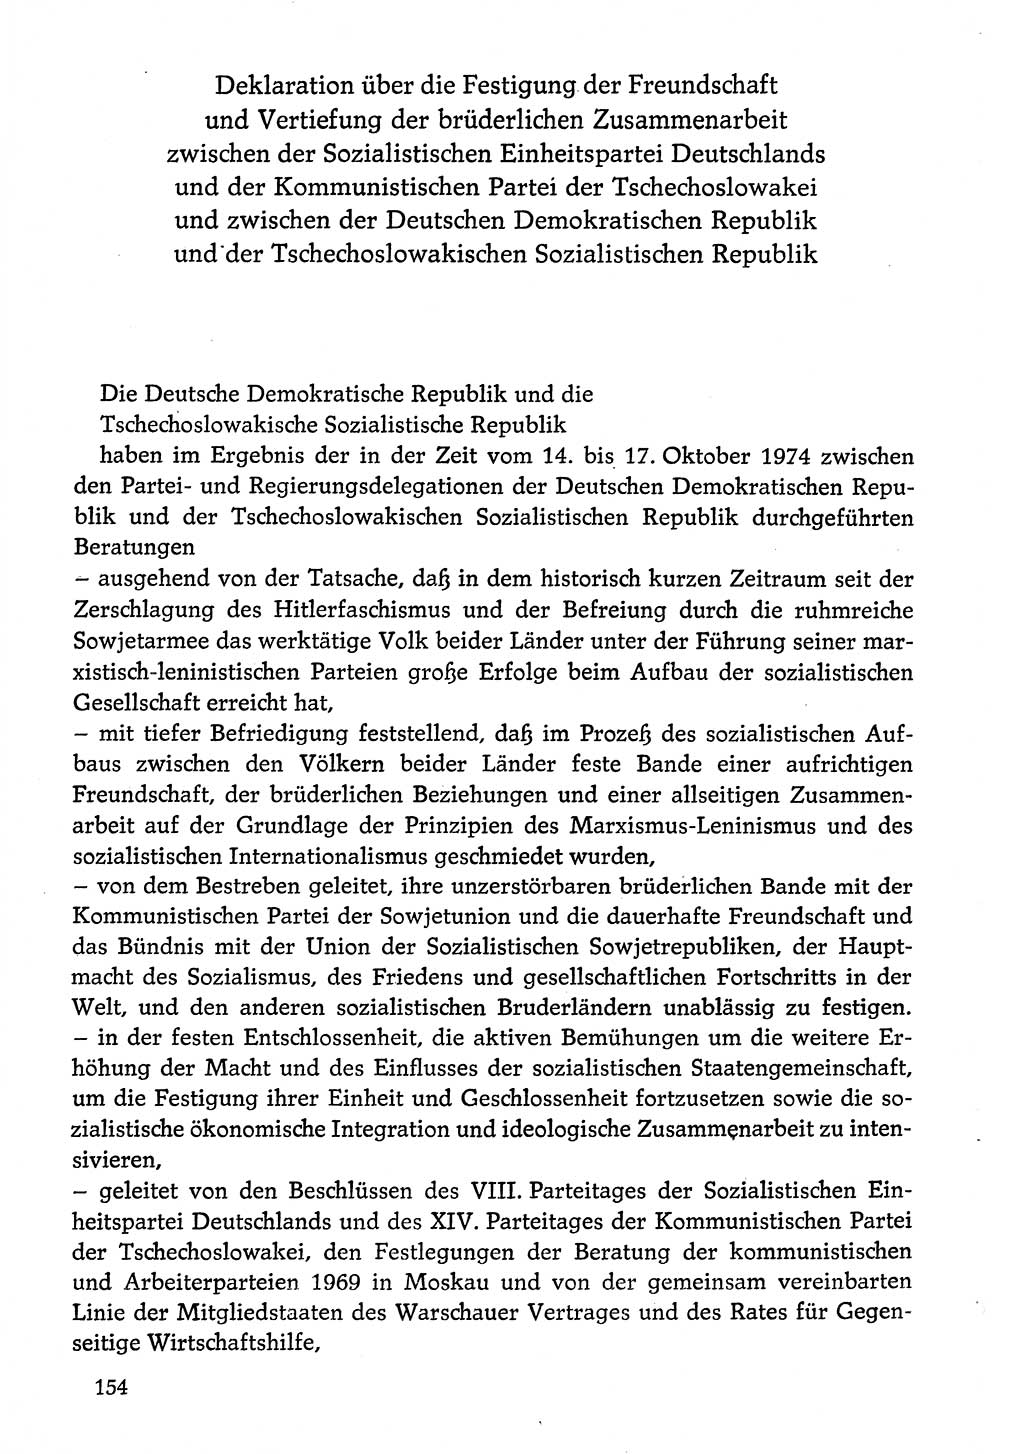 Dokumente der Sozialistischen Einheitspartei Deutschlands (SED) [Deutsche Demokratische Republik (DDR)] 1974-1975, Seite 154 (Dok. SED DDR 1978, Bd. ⅩⅤ, S. 154)